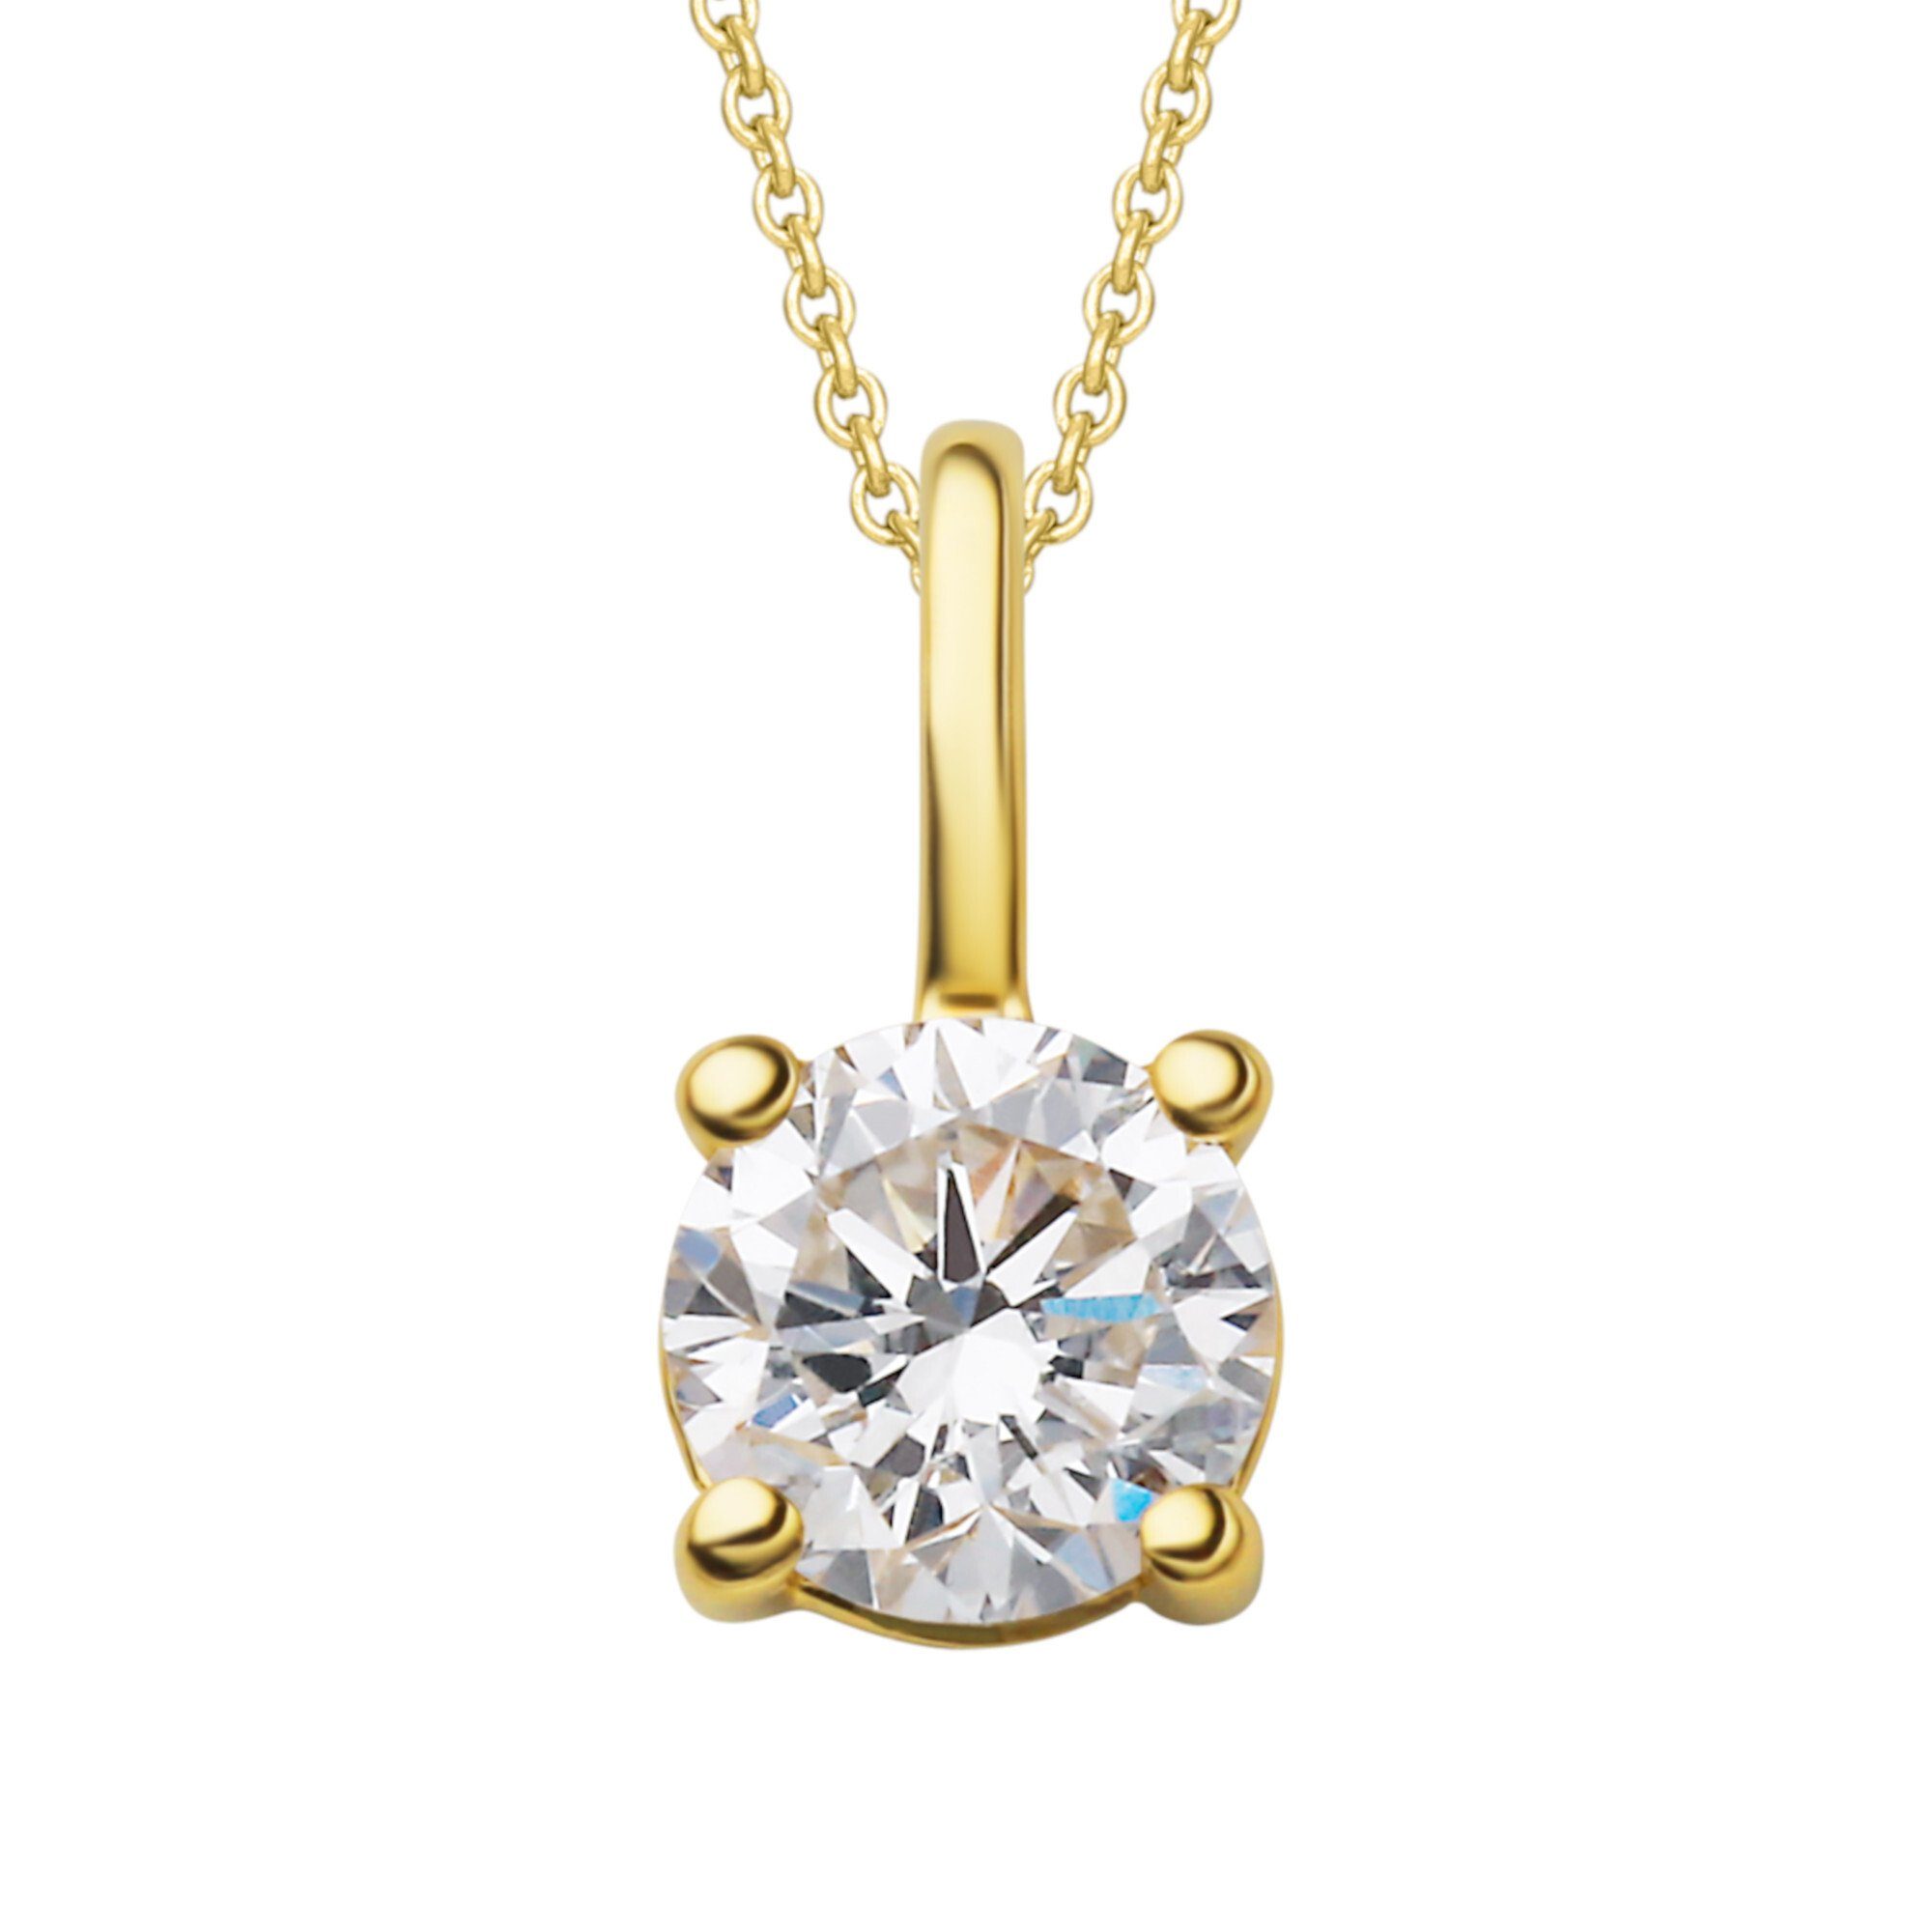 ONE ELEMENT Kettenanhänger 0.15 ct Diamant Brillant Anhänger aus 750 Gelbgold, Damen Gold Schmuck | Kettenanhänger